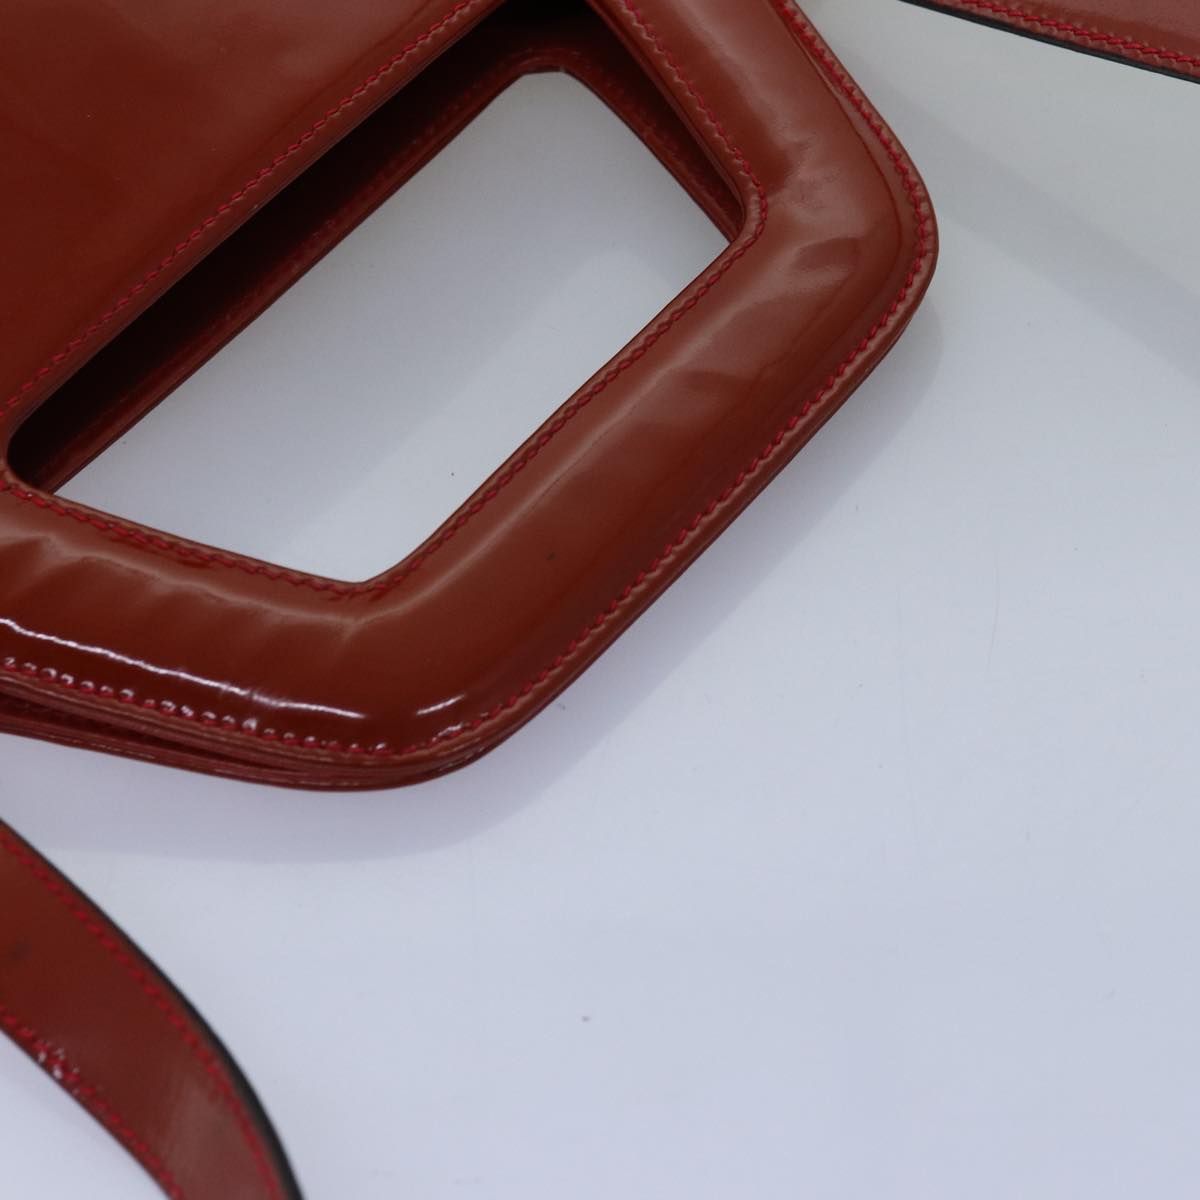 Salvatore Ferragamo Hand Bag Patent leather 2way Orange Auth 73990